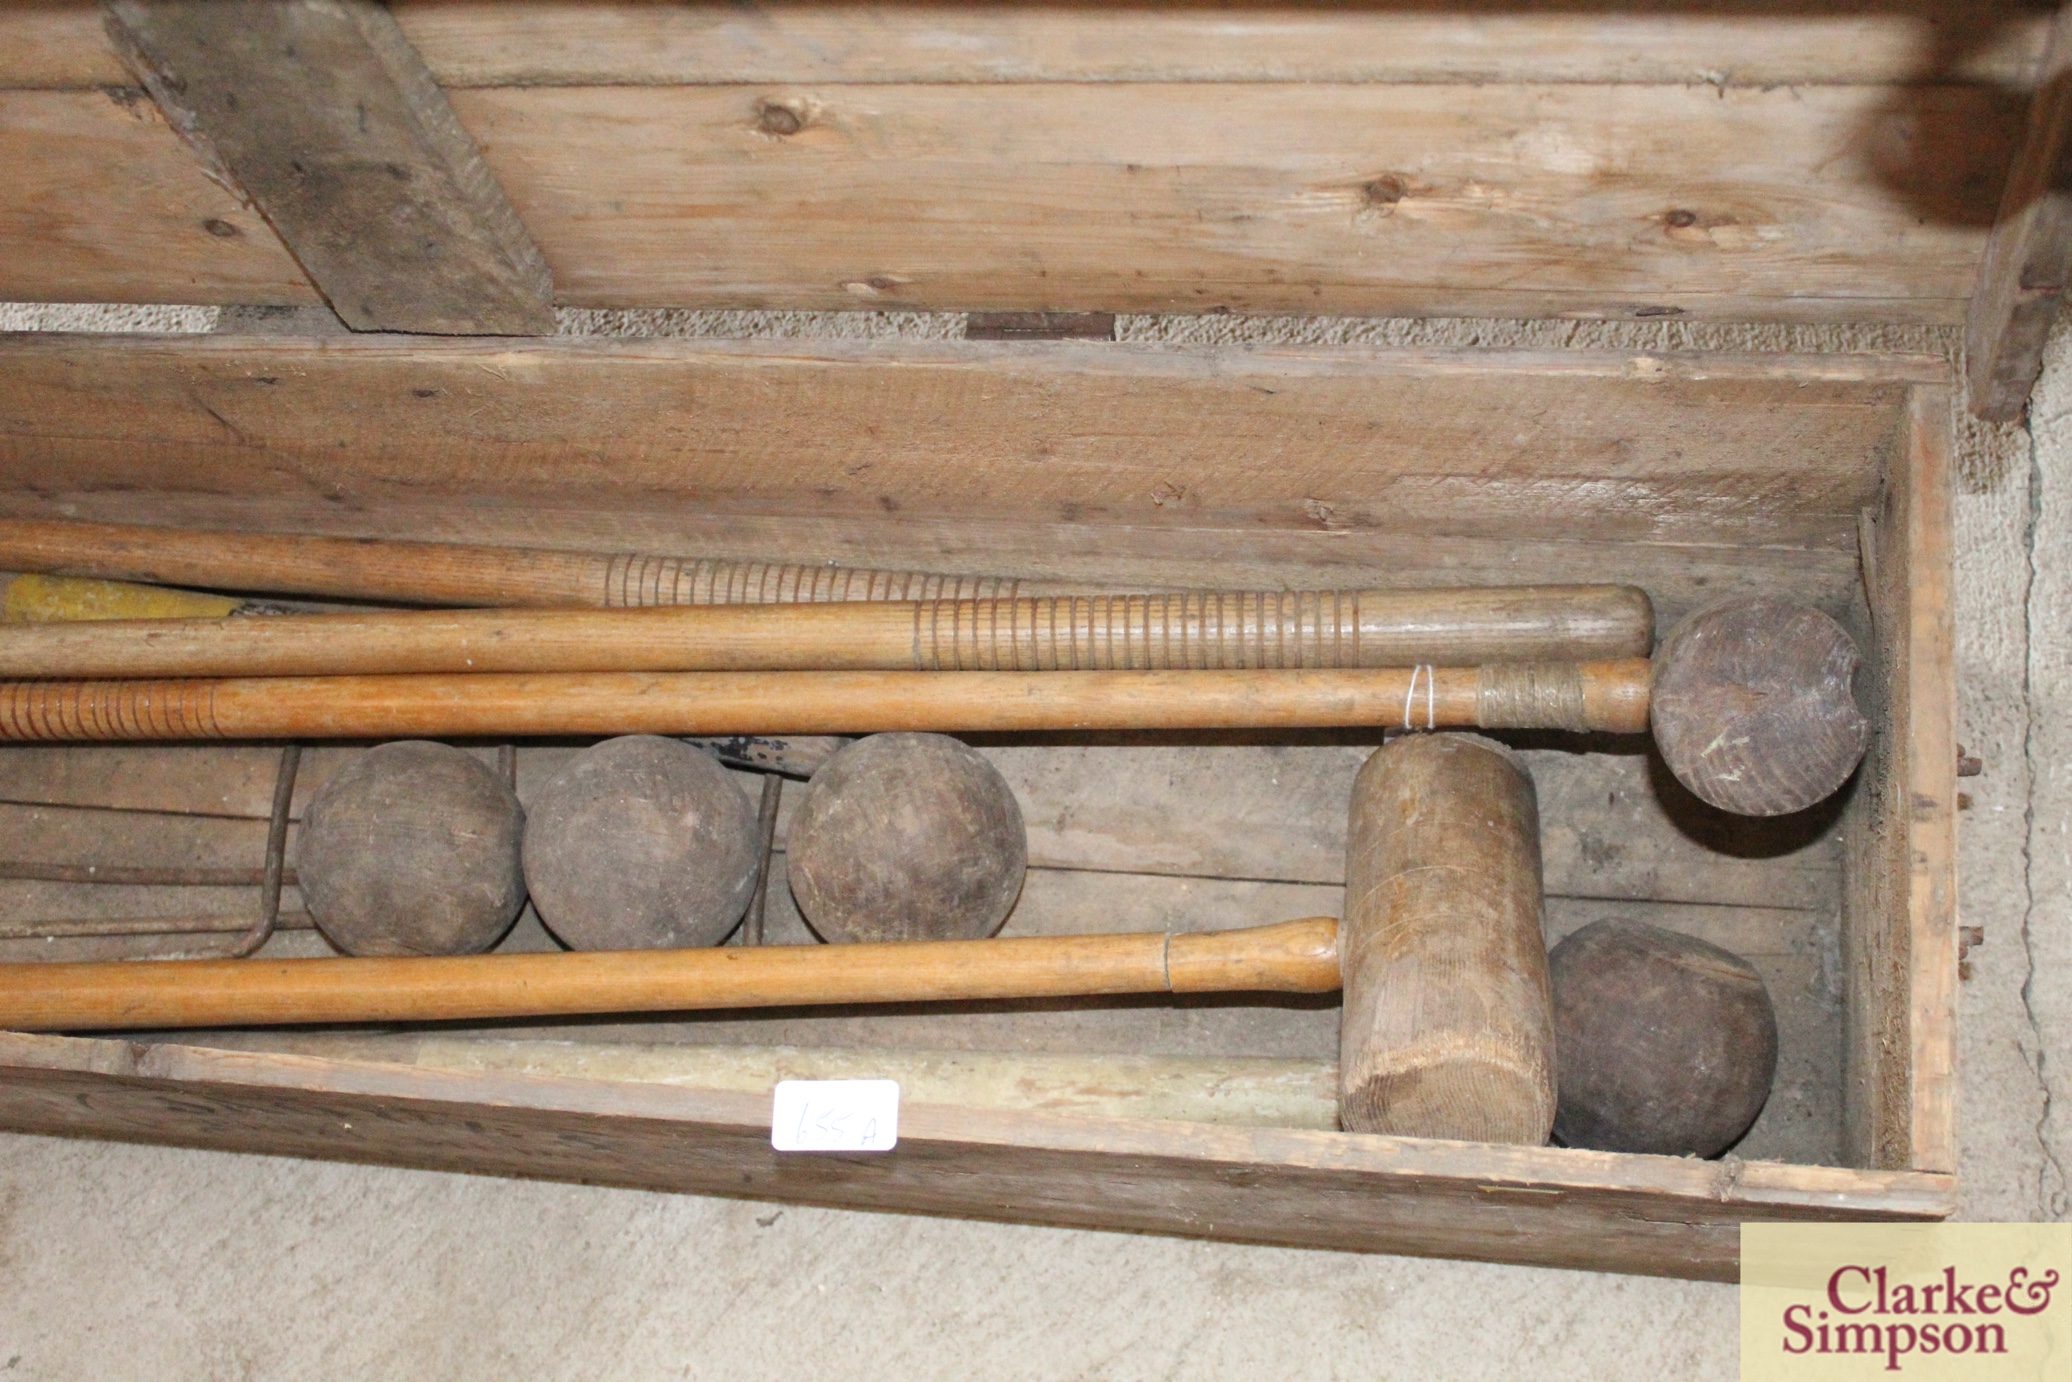 A Jaques croquet set in original box - Image 4 of 4